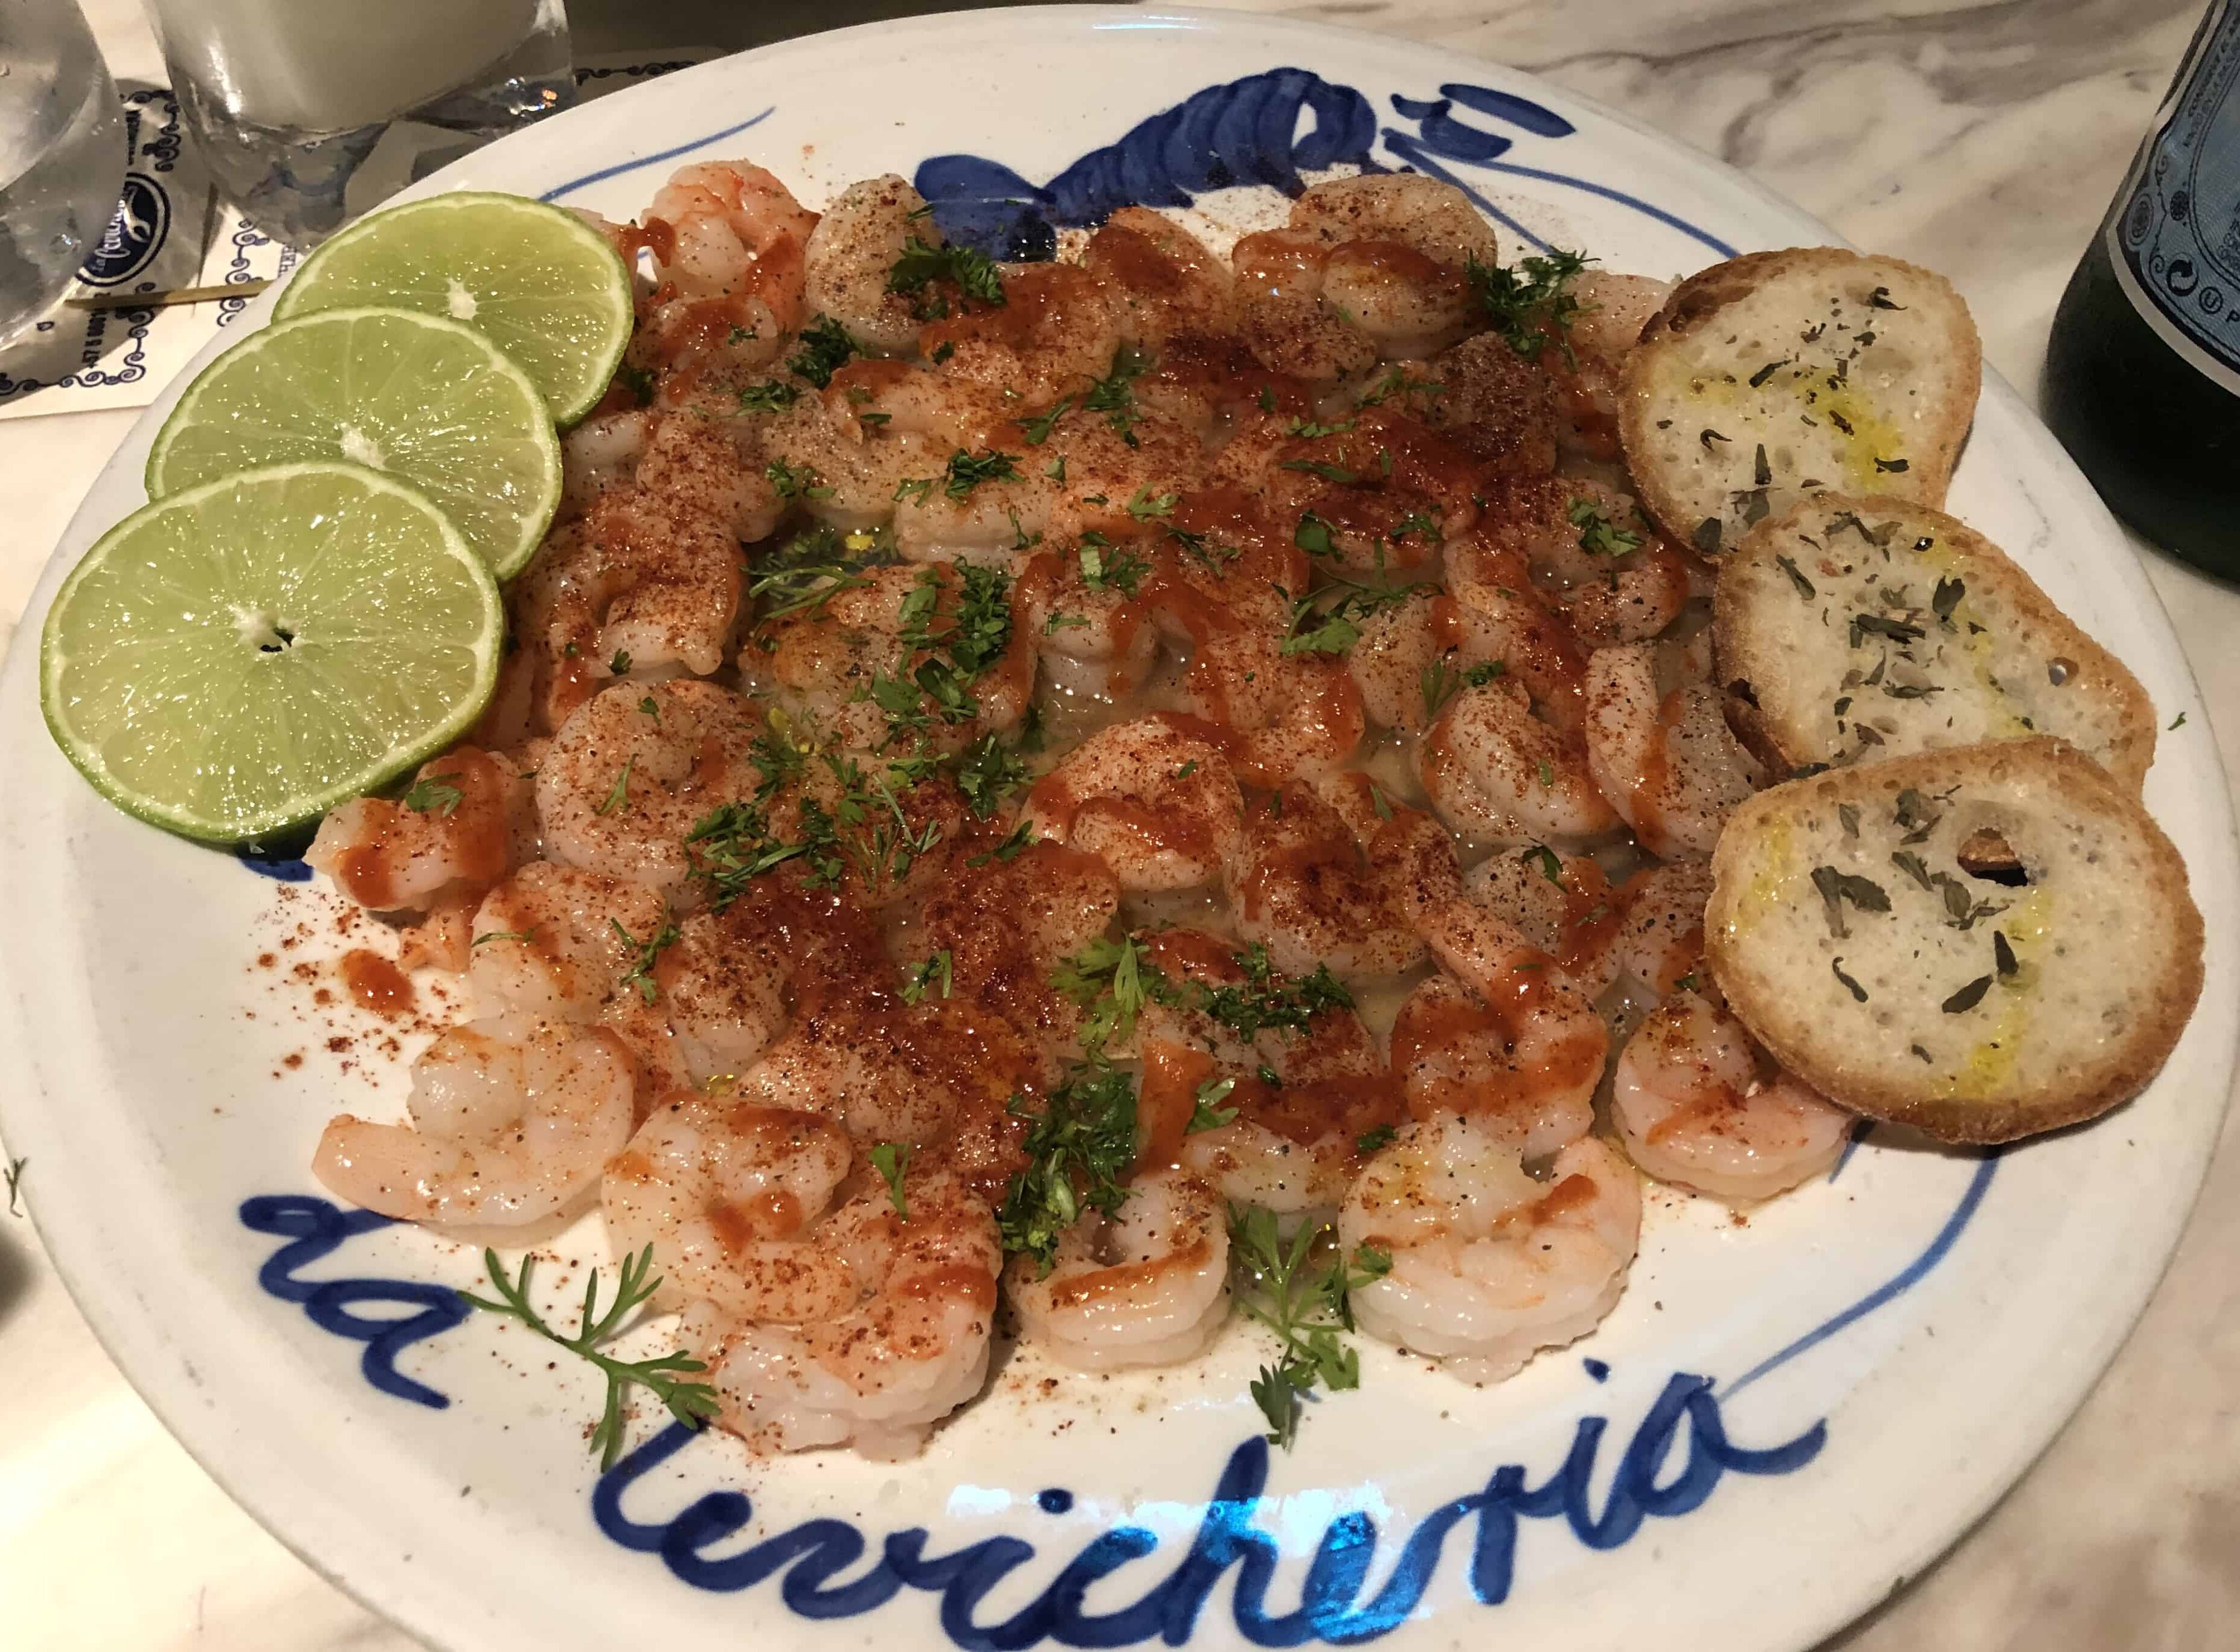 Devil's shrimp at La Cevichería in Cartagena, Colombia